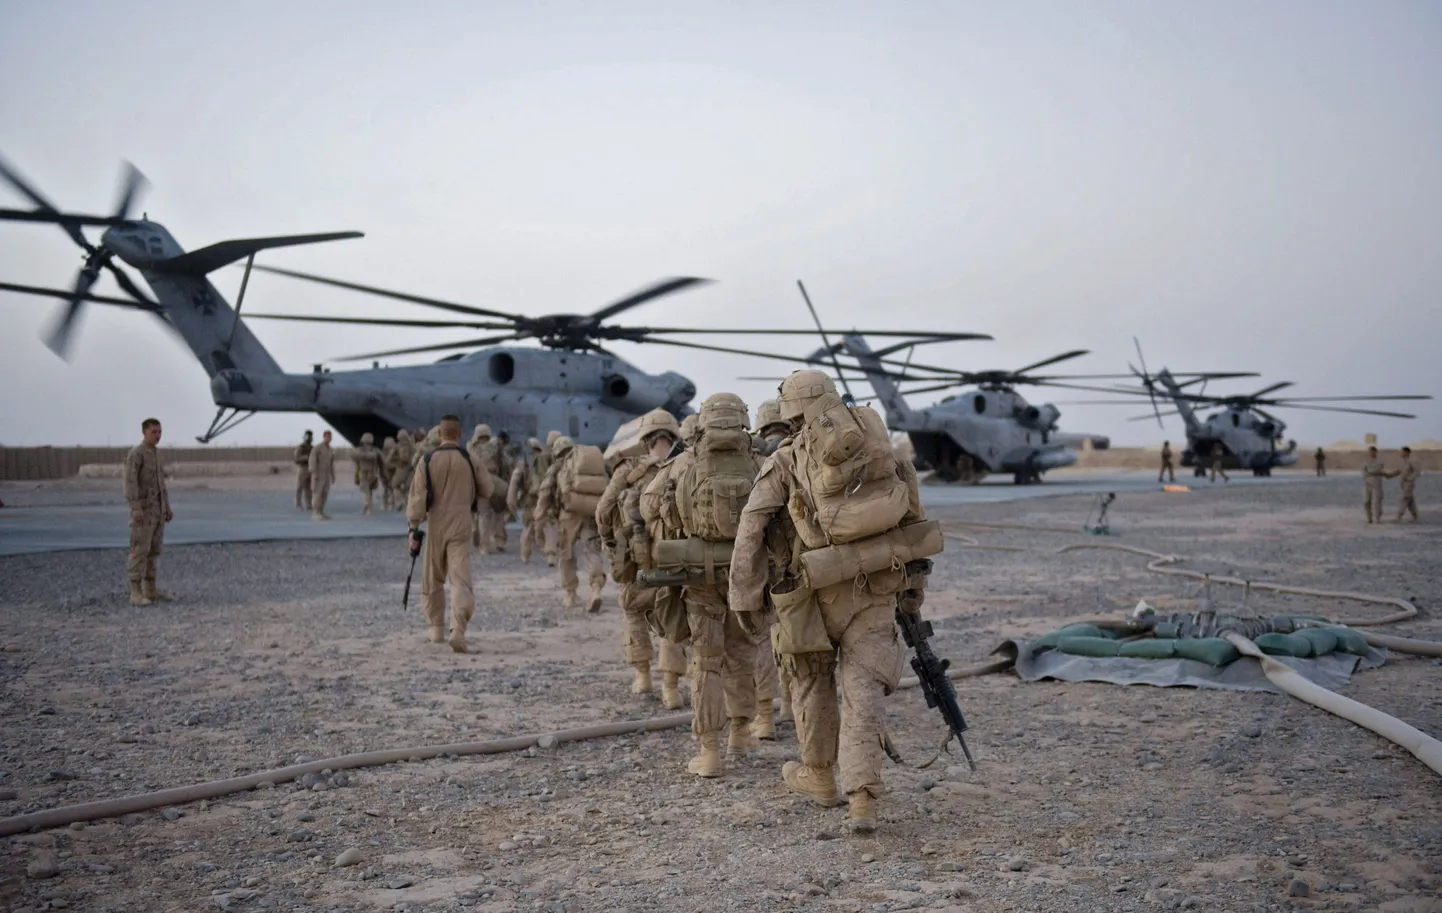 Коалиционные войска в Афганистане отправляются на военную операцию. Снимок иллюстративный.